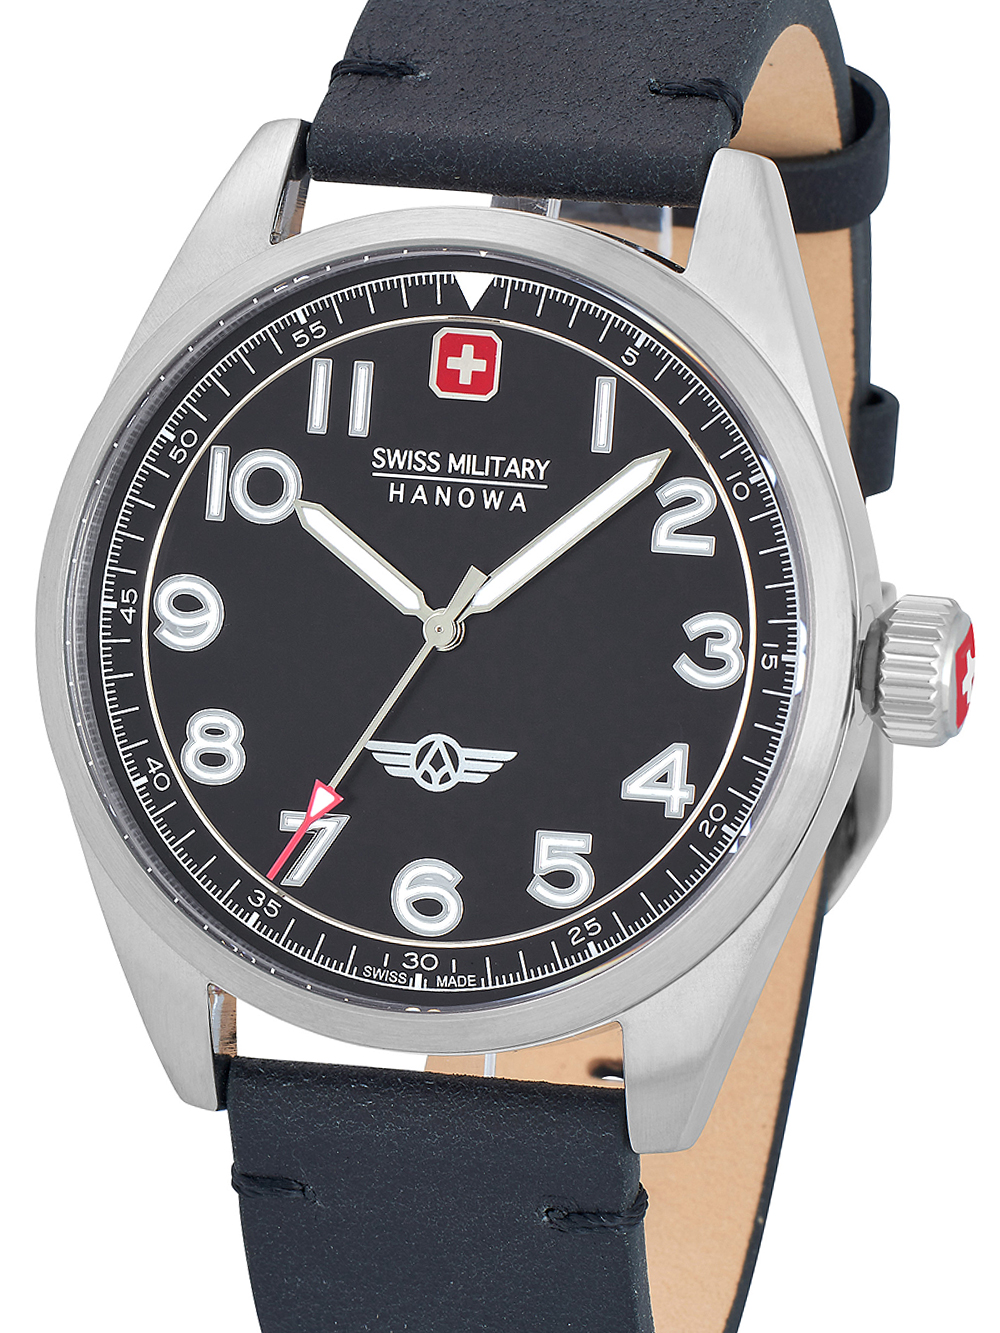 shopping: Hanowa cheap SMWGA2100401 Falcon 42 watch Mens Military Swiss Timeshop24 mm